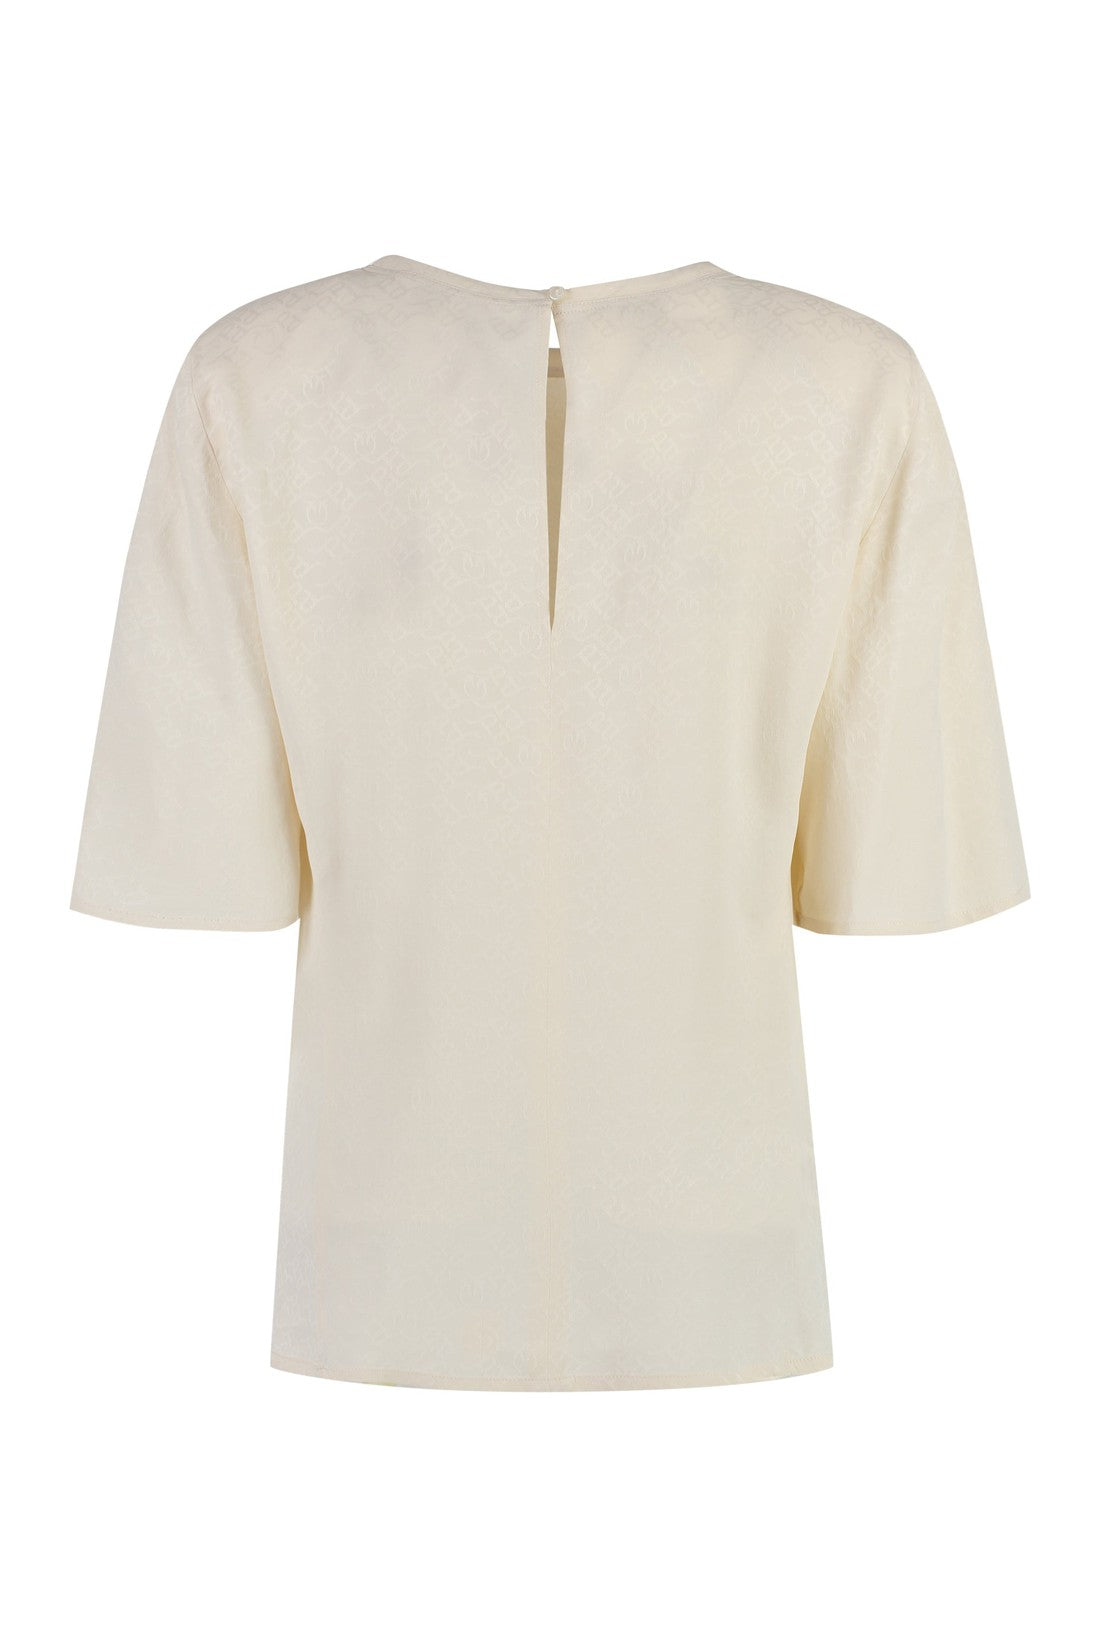 Pinko-OUTLET-SALE-Crepe de chine blouse-ARCHIVIST